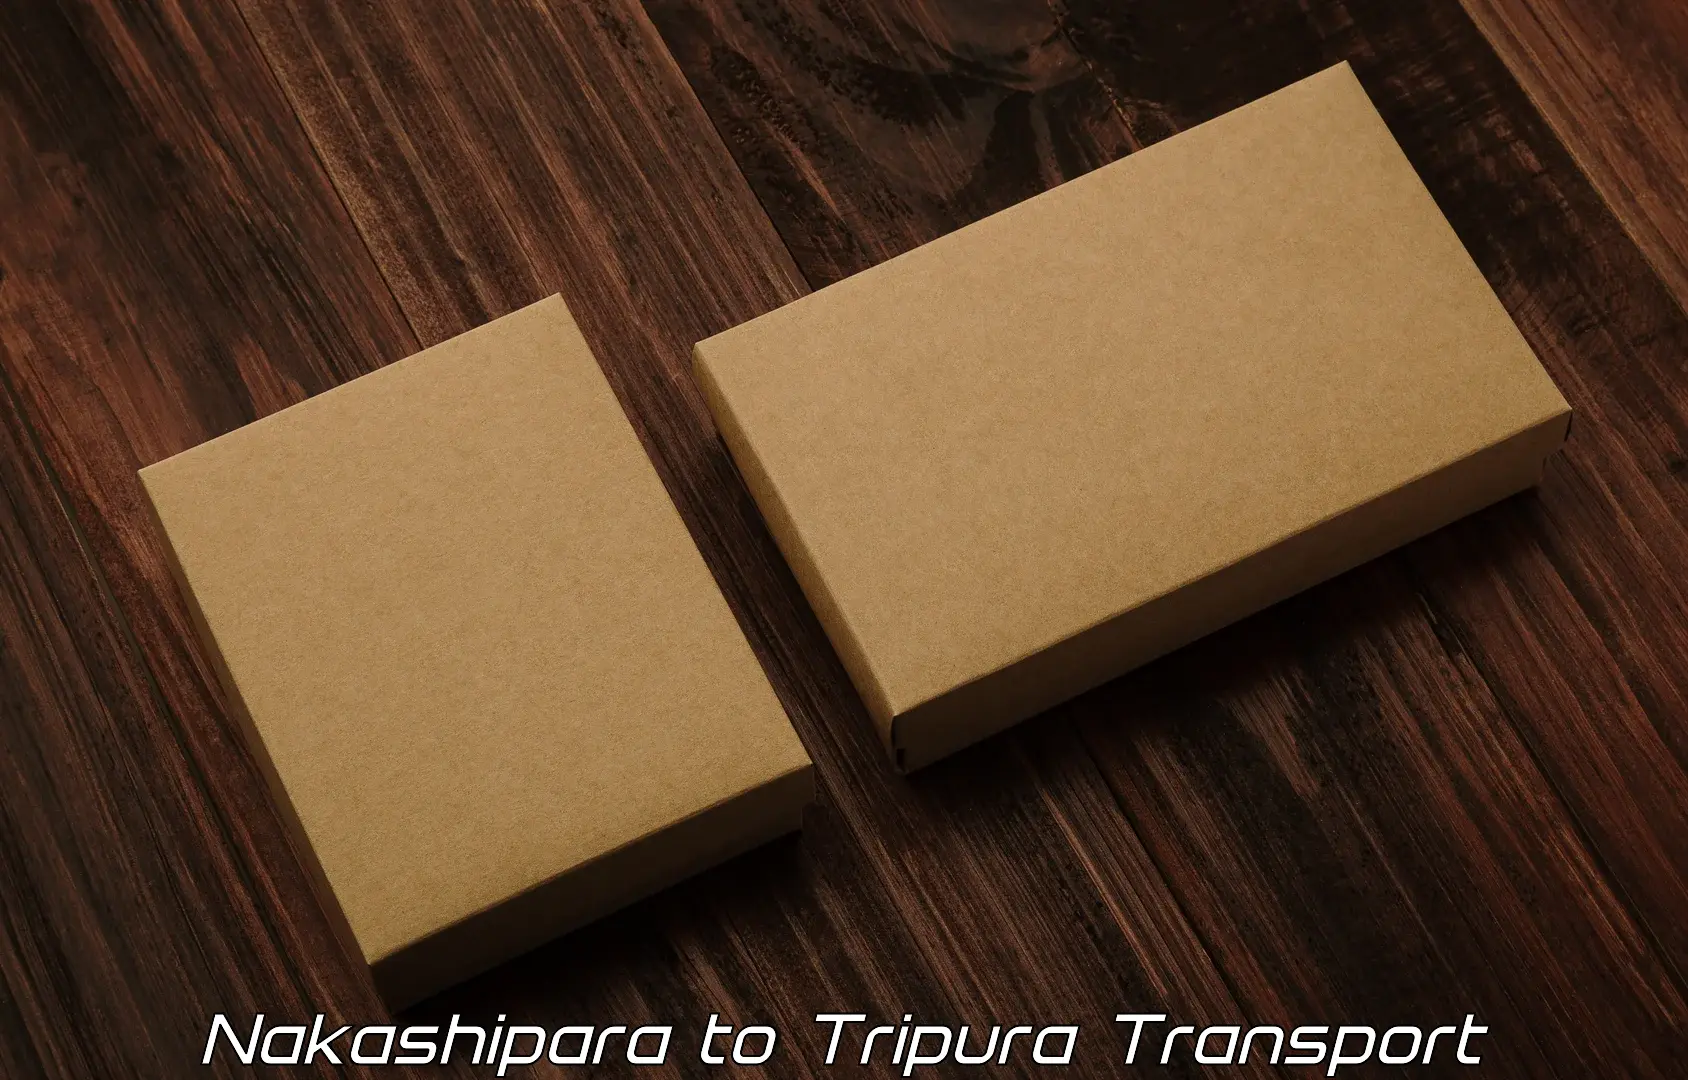 Furniture transport service in Nakashipara to Kailashahar